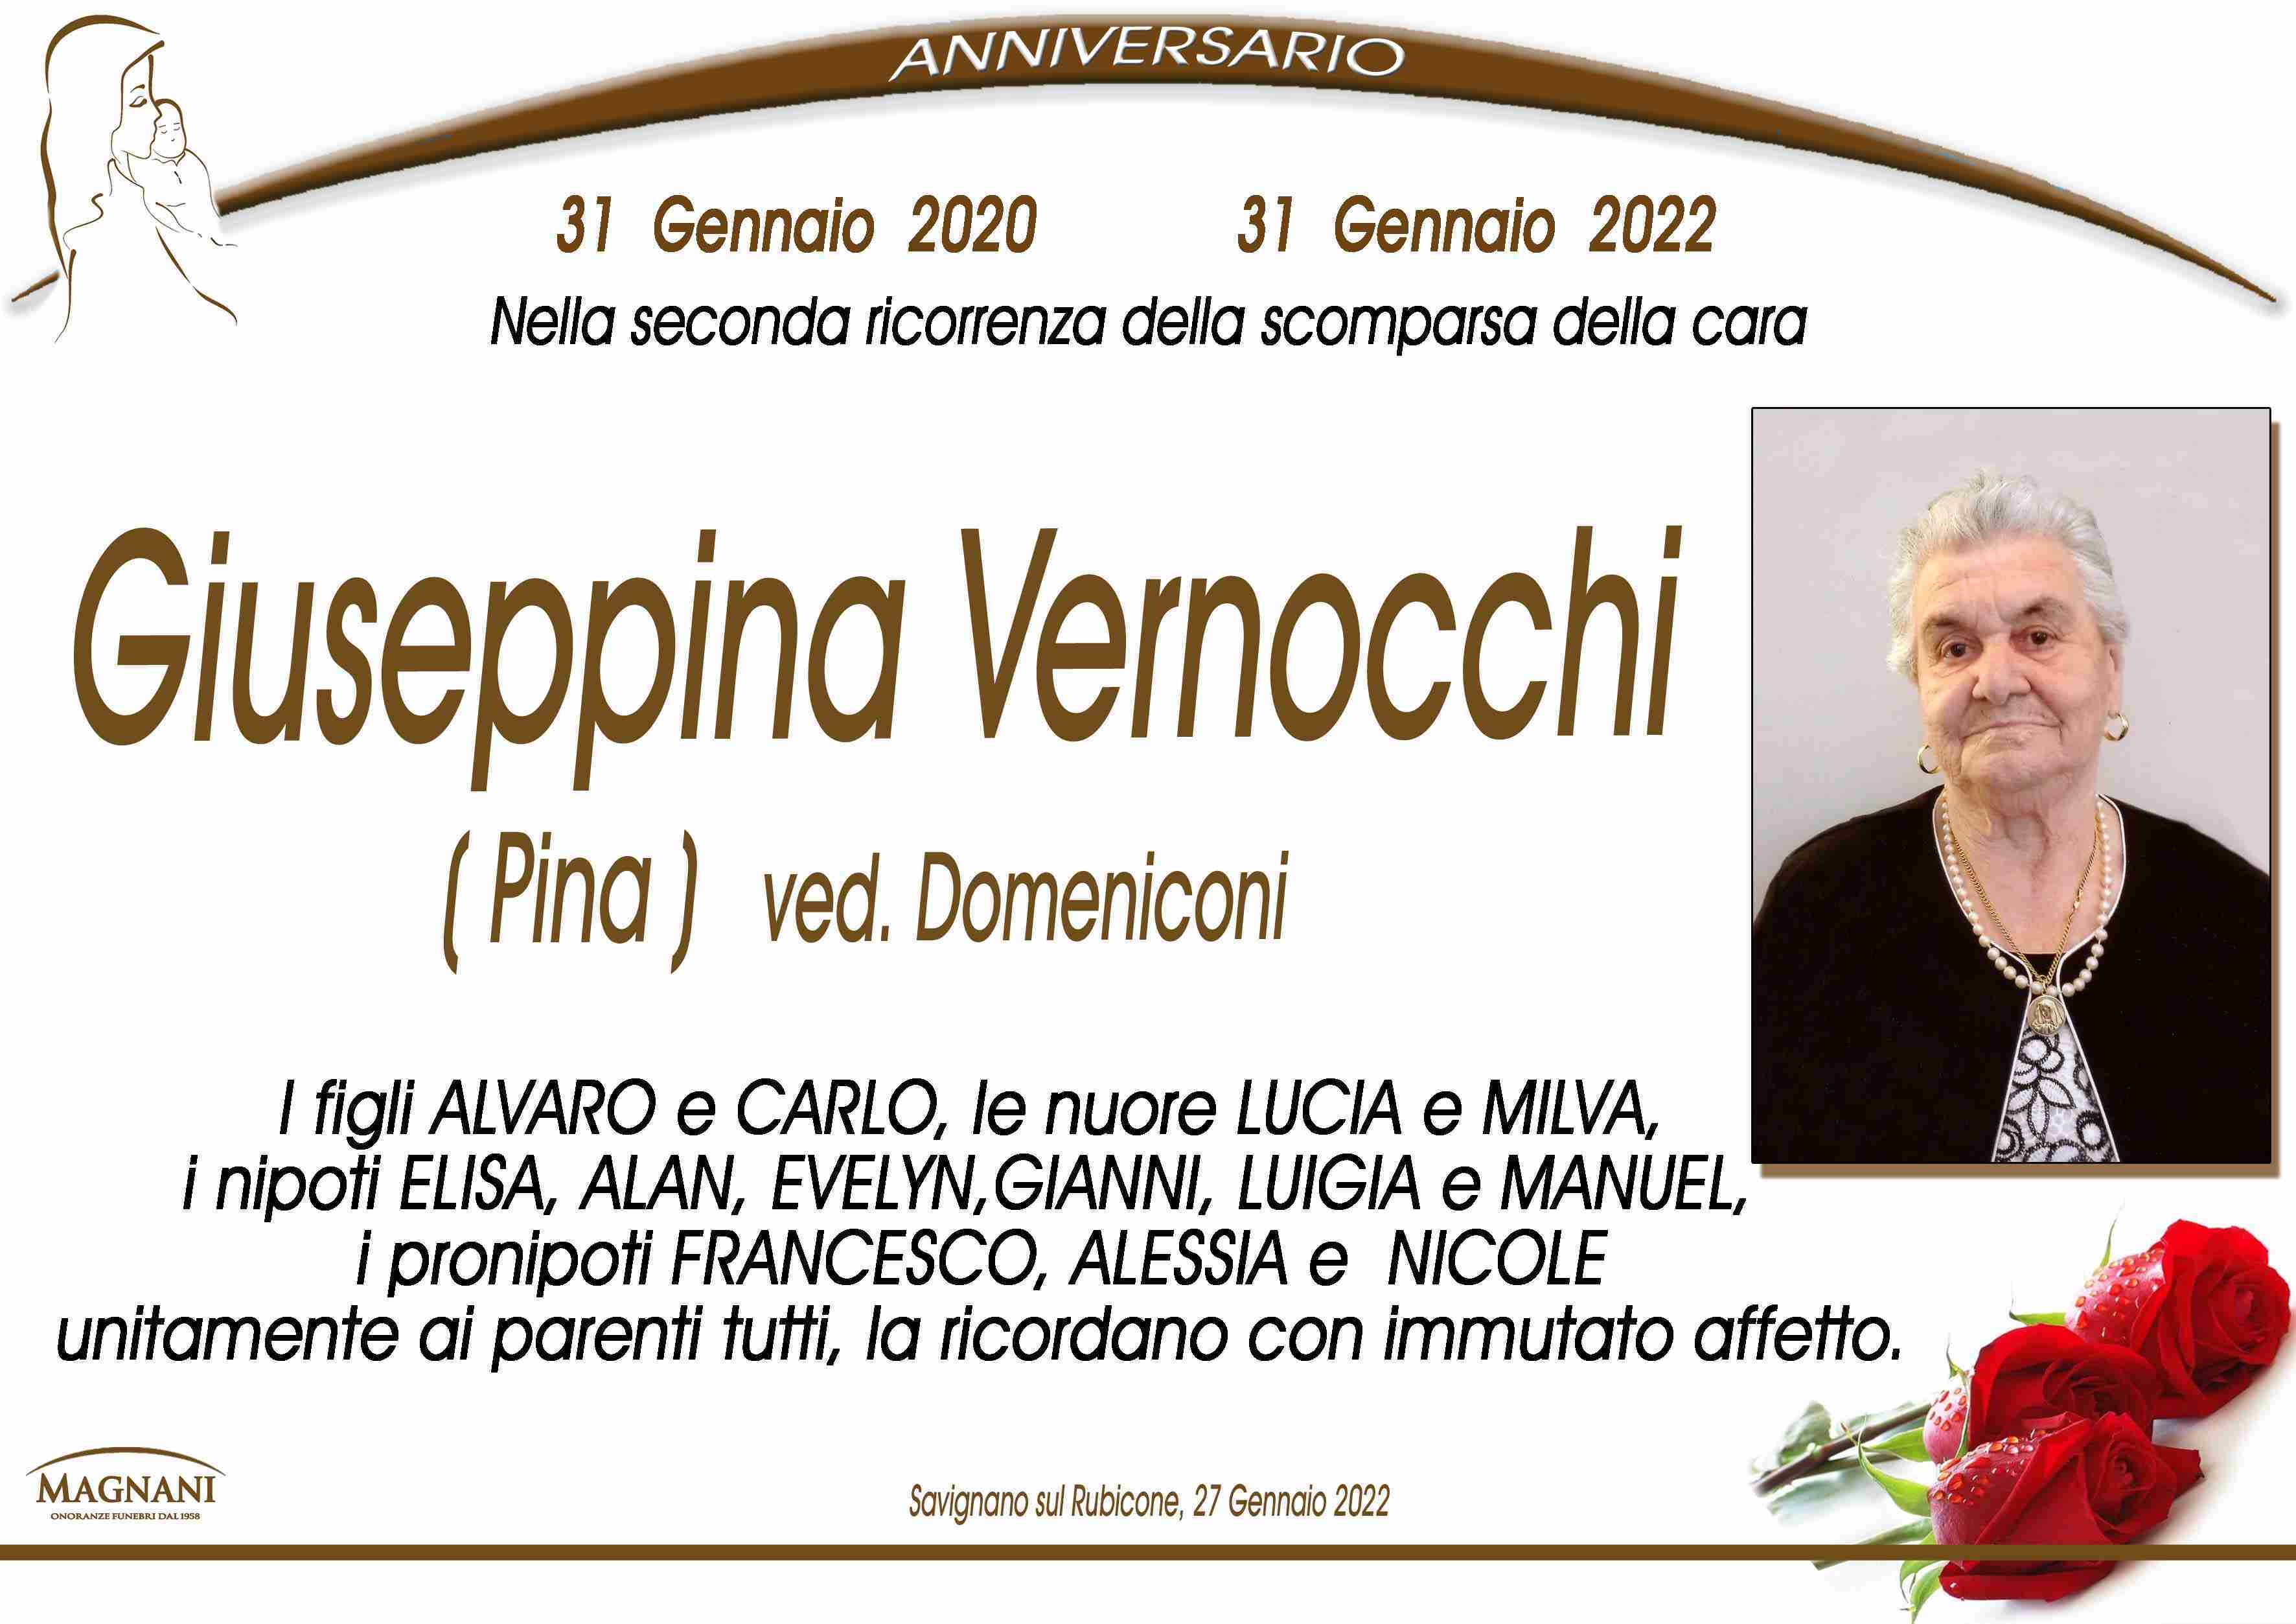 Giuseppina Vernocchi